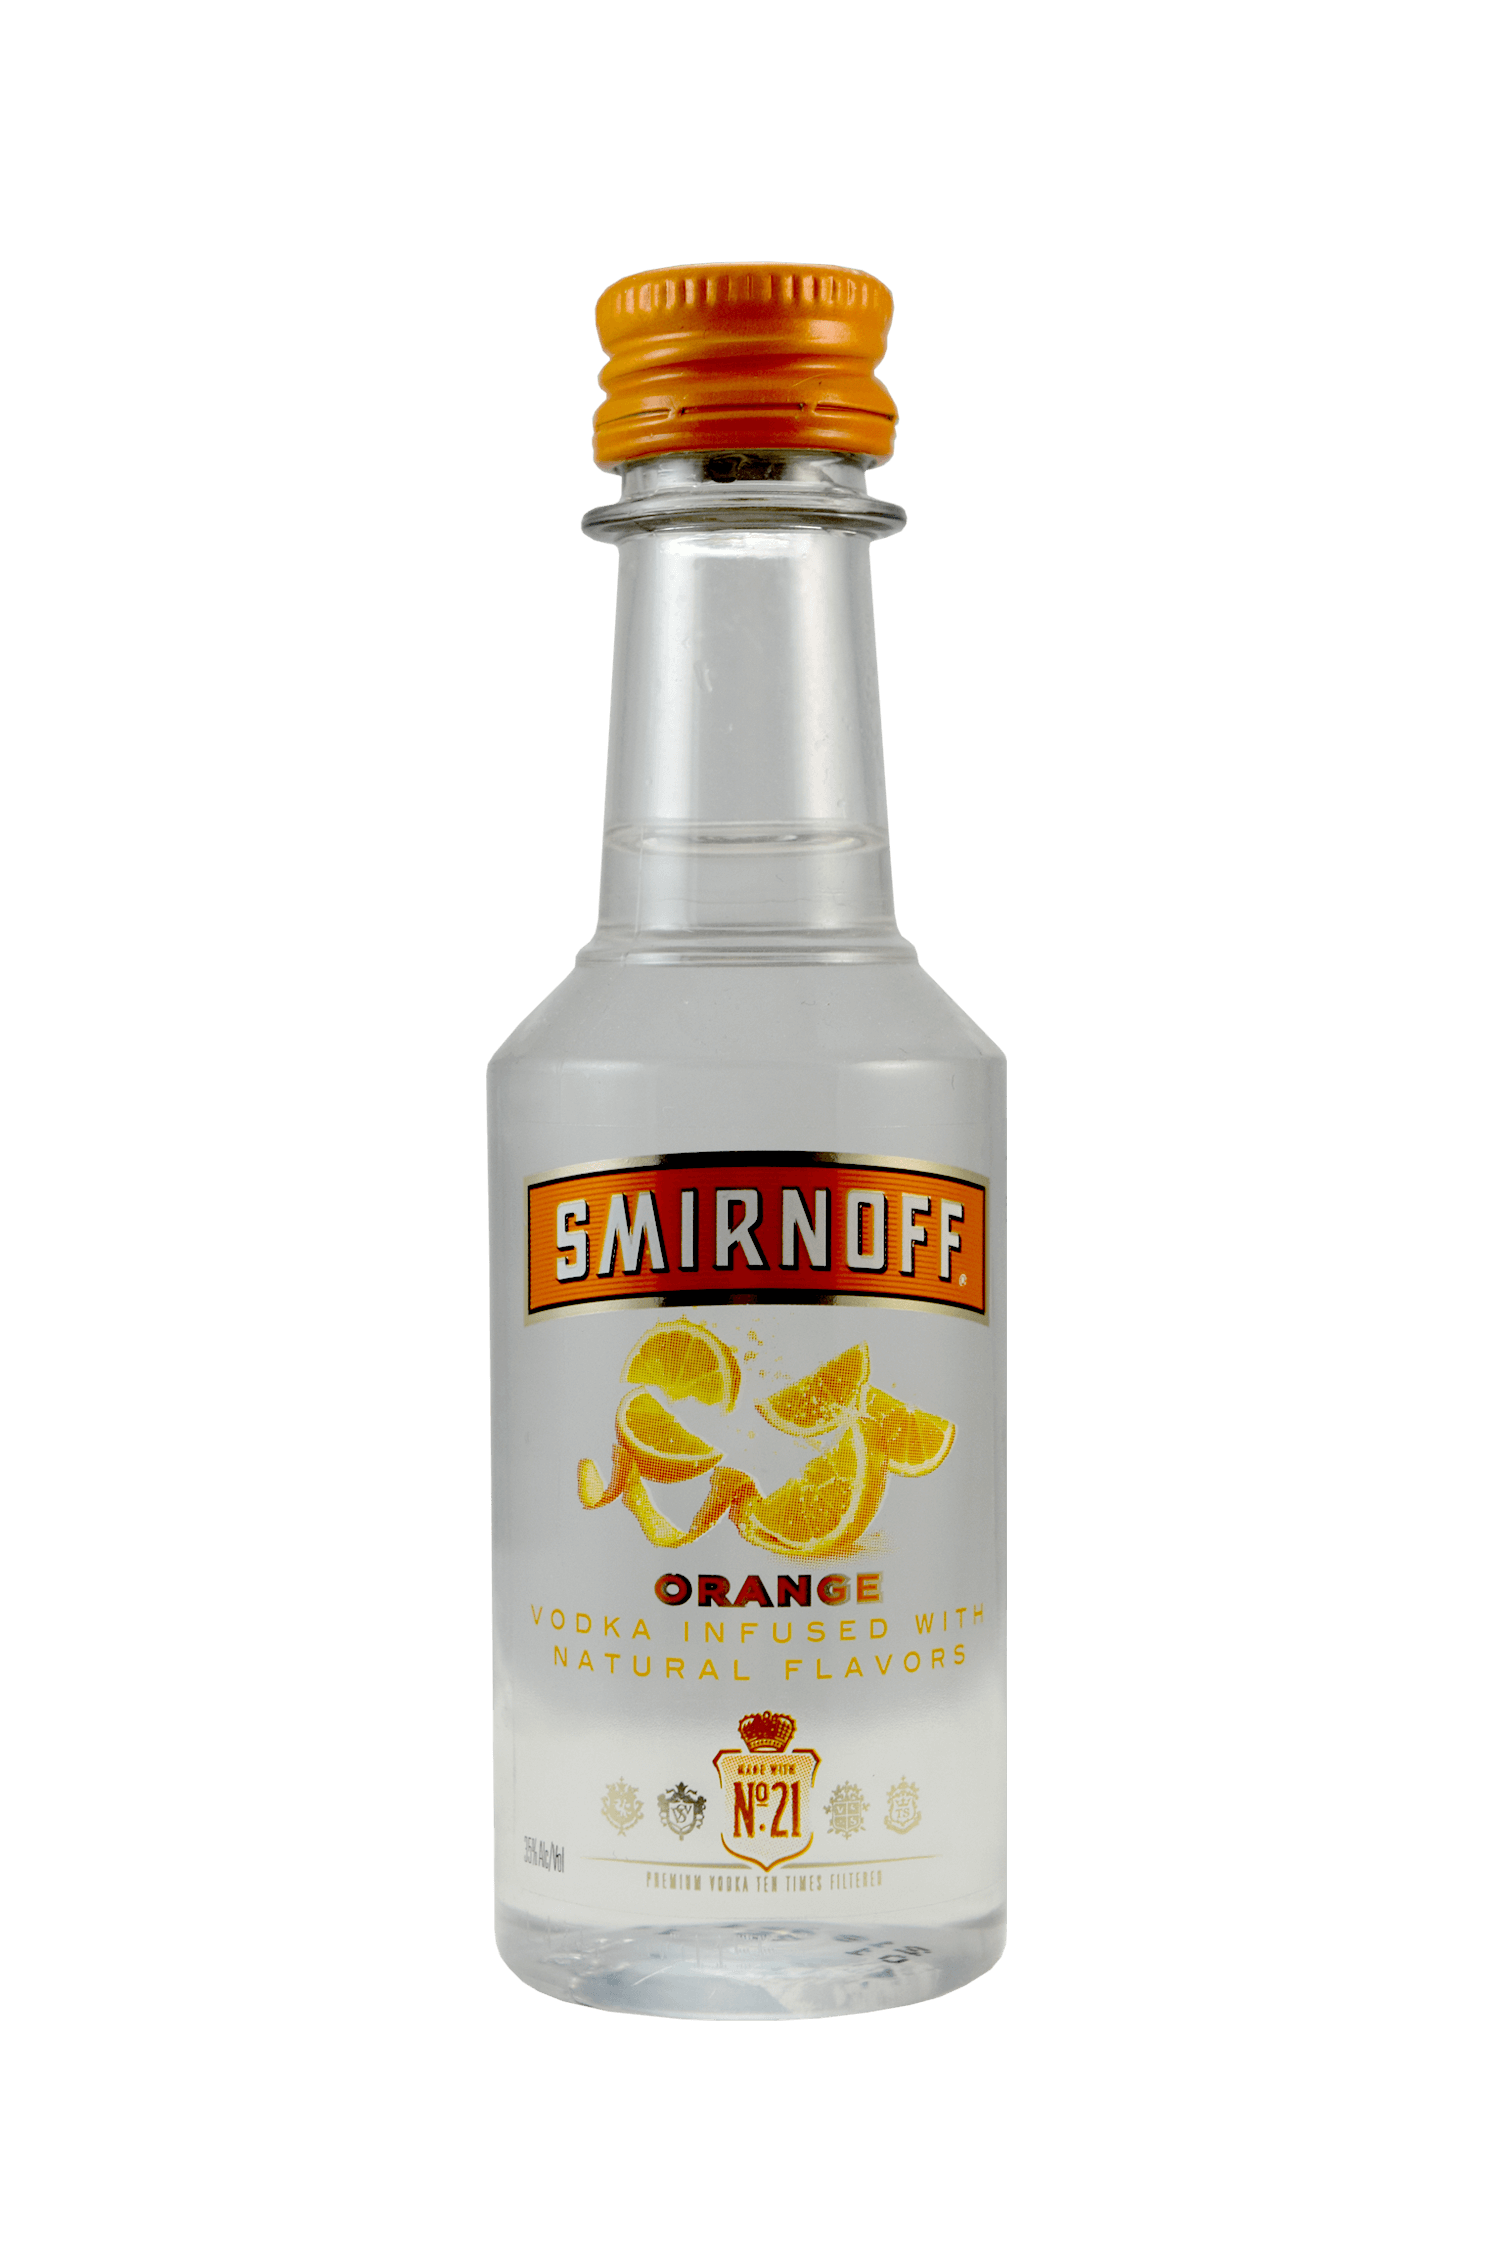 Smirnoff Vodka Orange